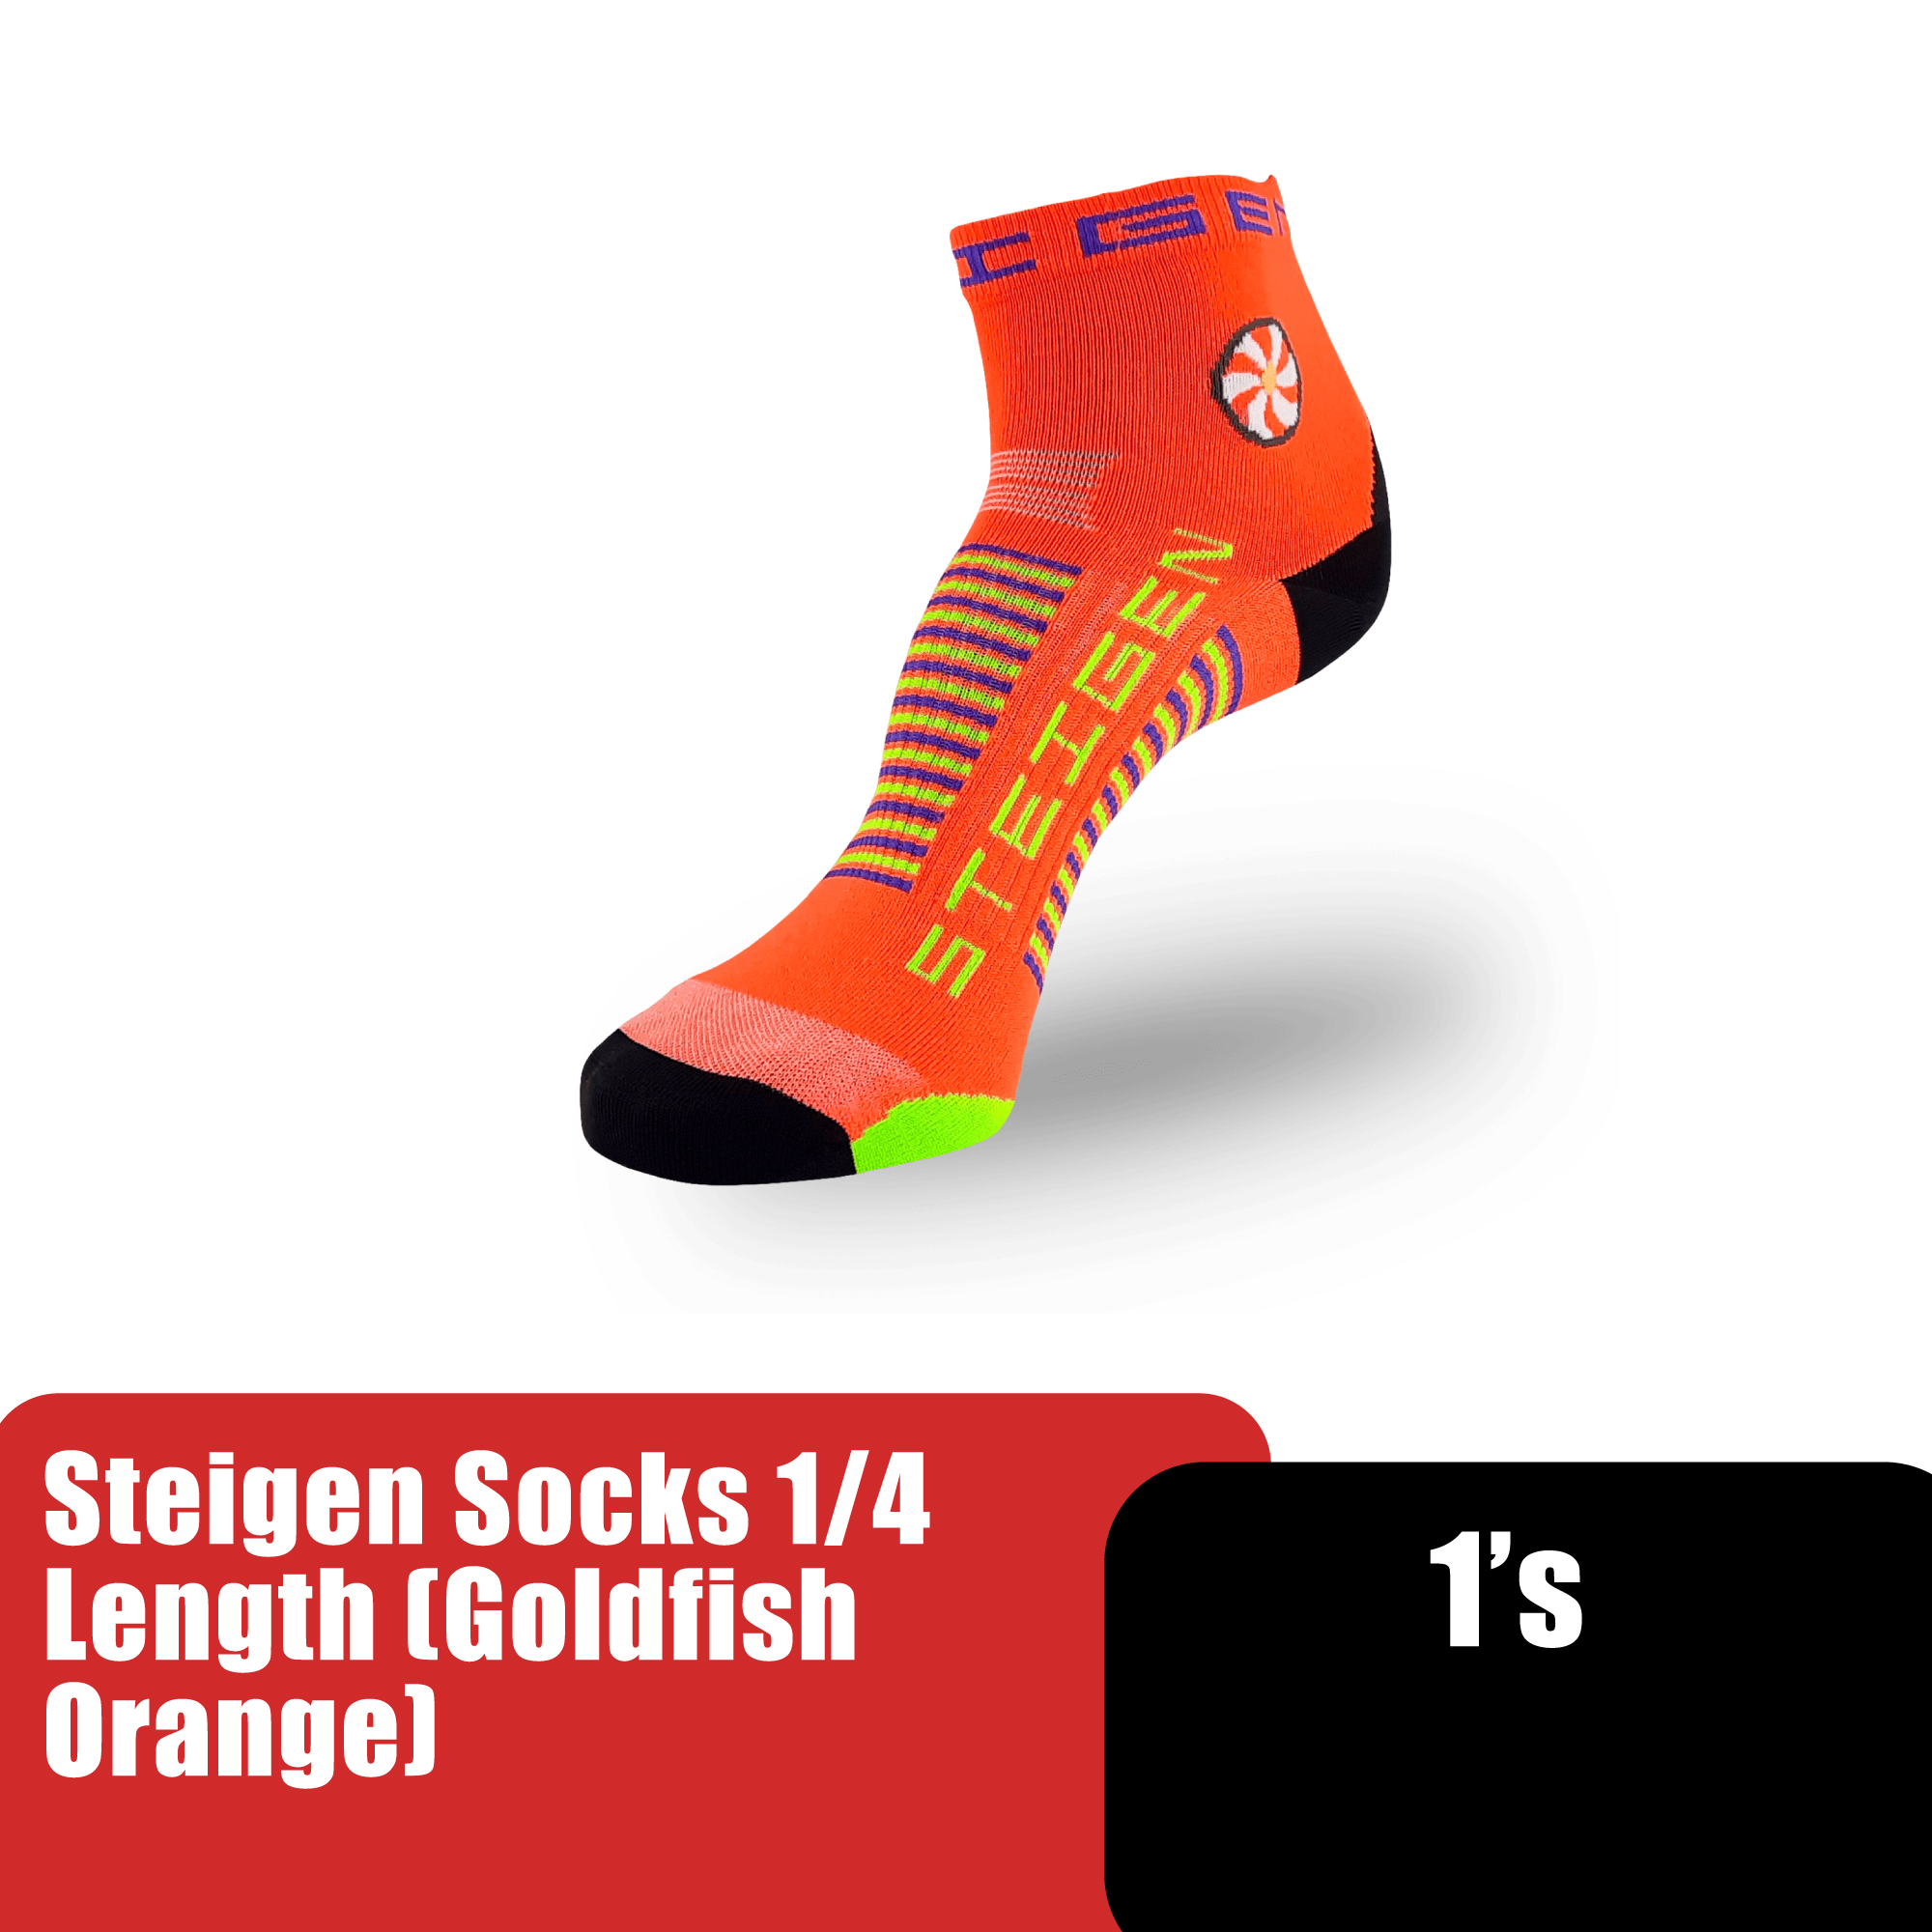 Steigen 14 Length Socks, Running Socks, Sport Socks as Free Size Stocking (Stoking) (运动袜子) - Goldfish Orange